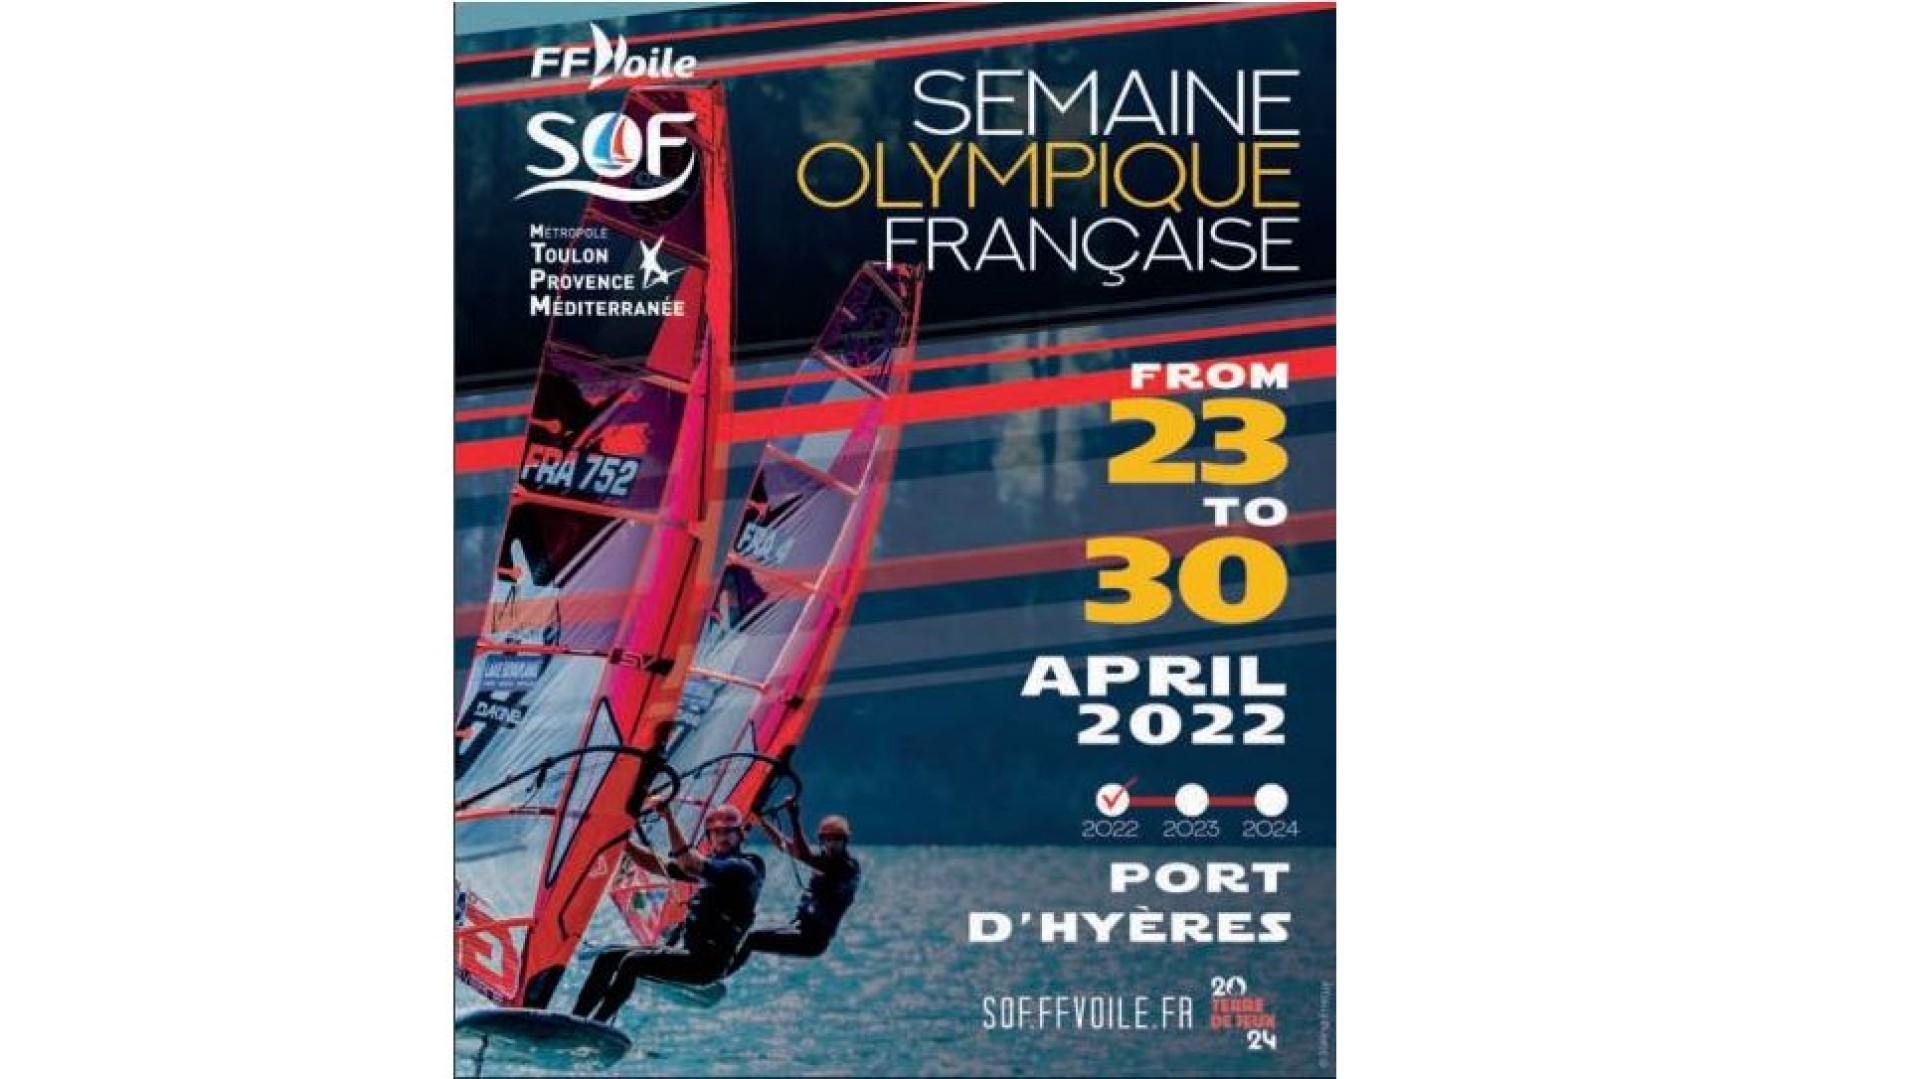 The 53rd Semaine Olympique Française de Hyères is back